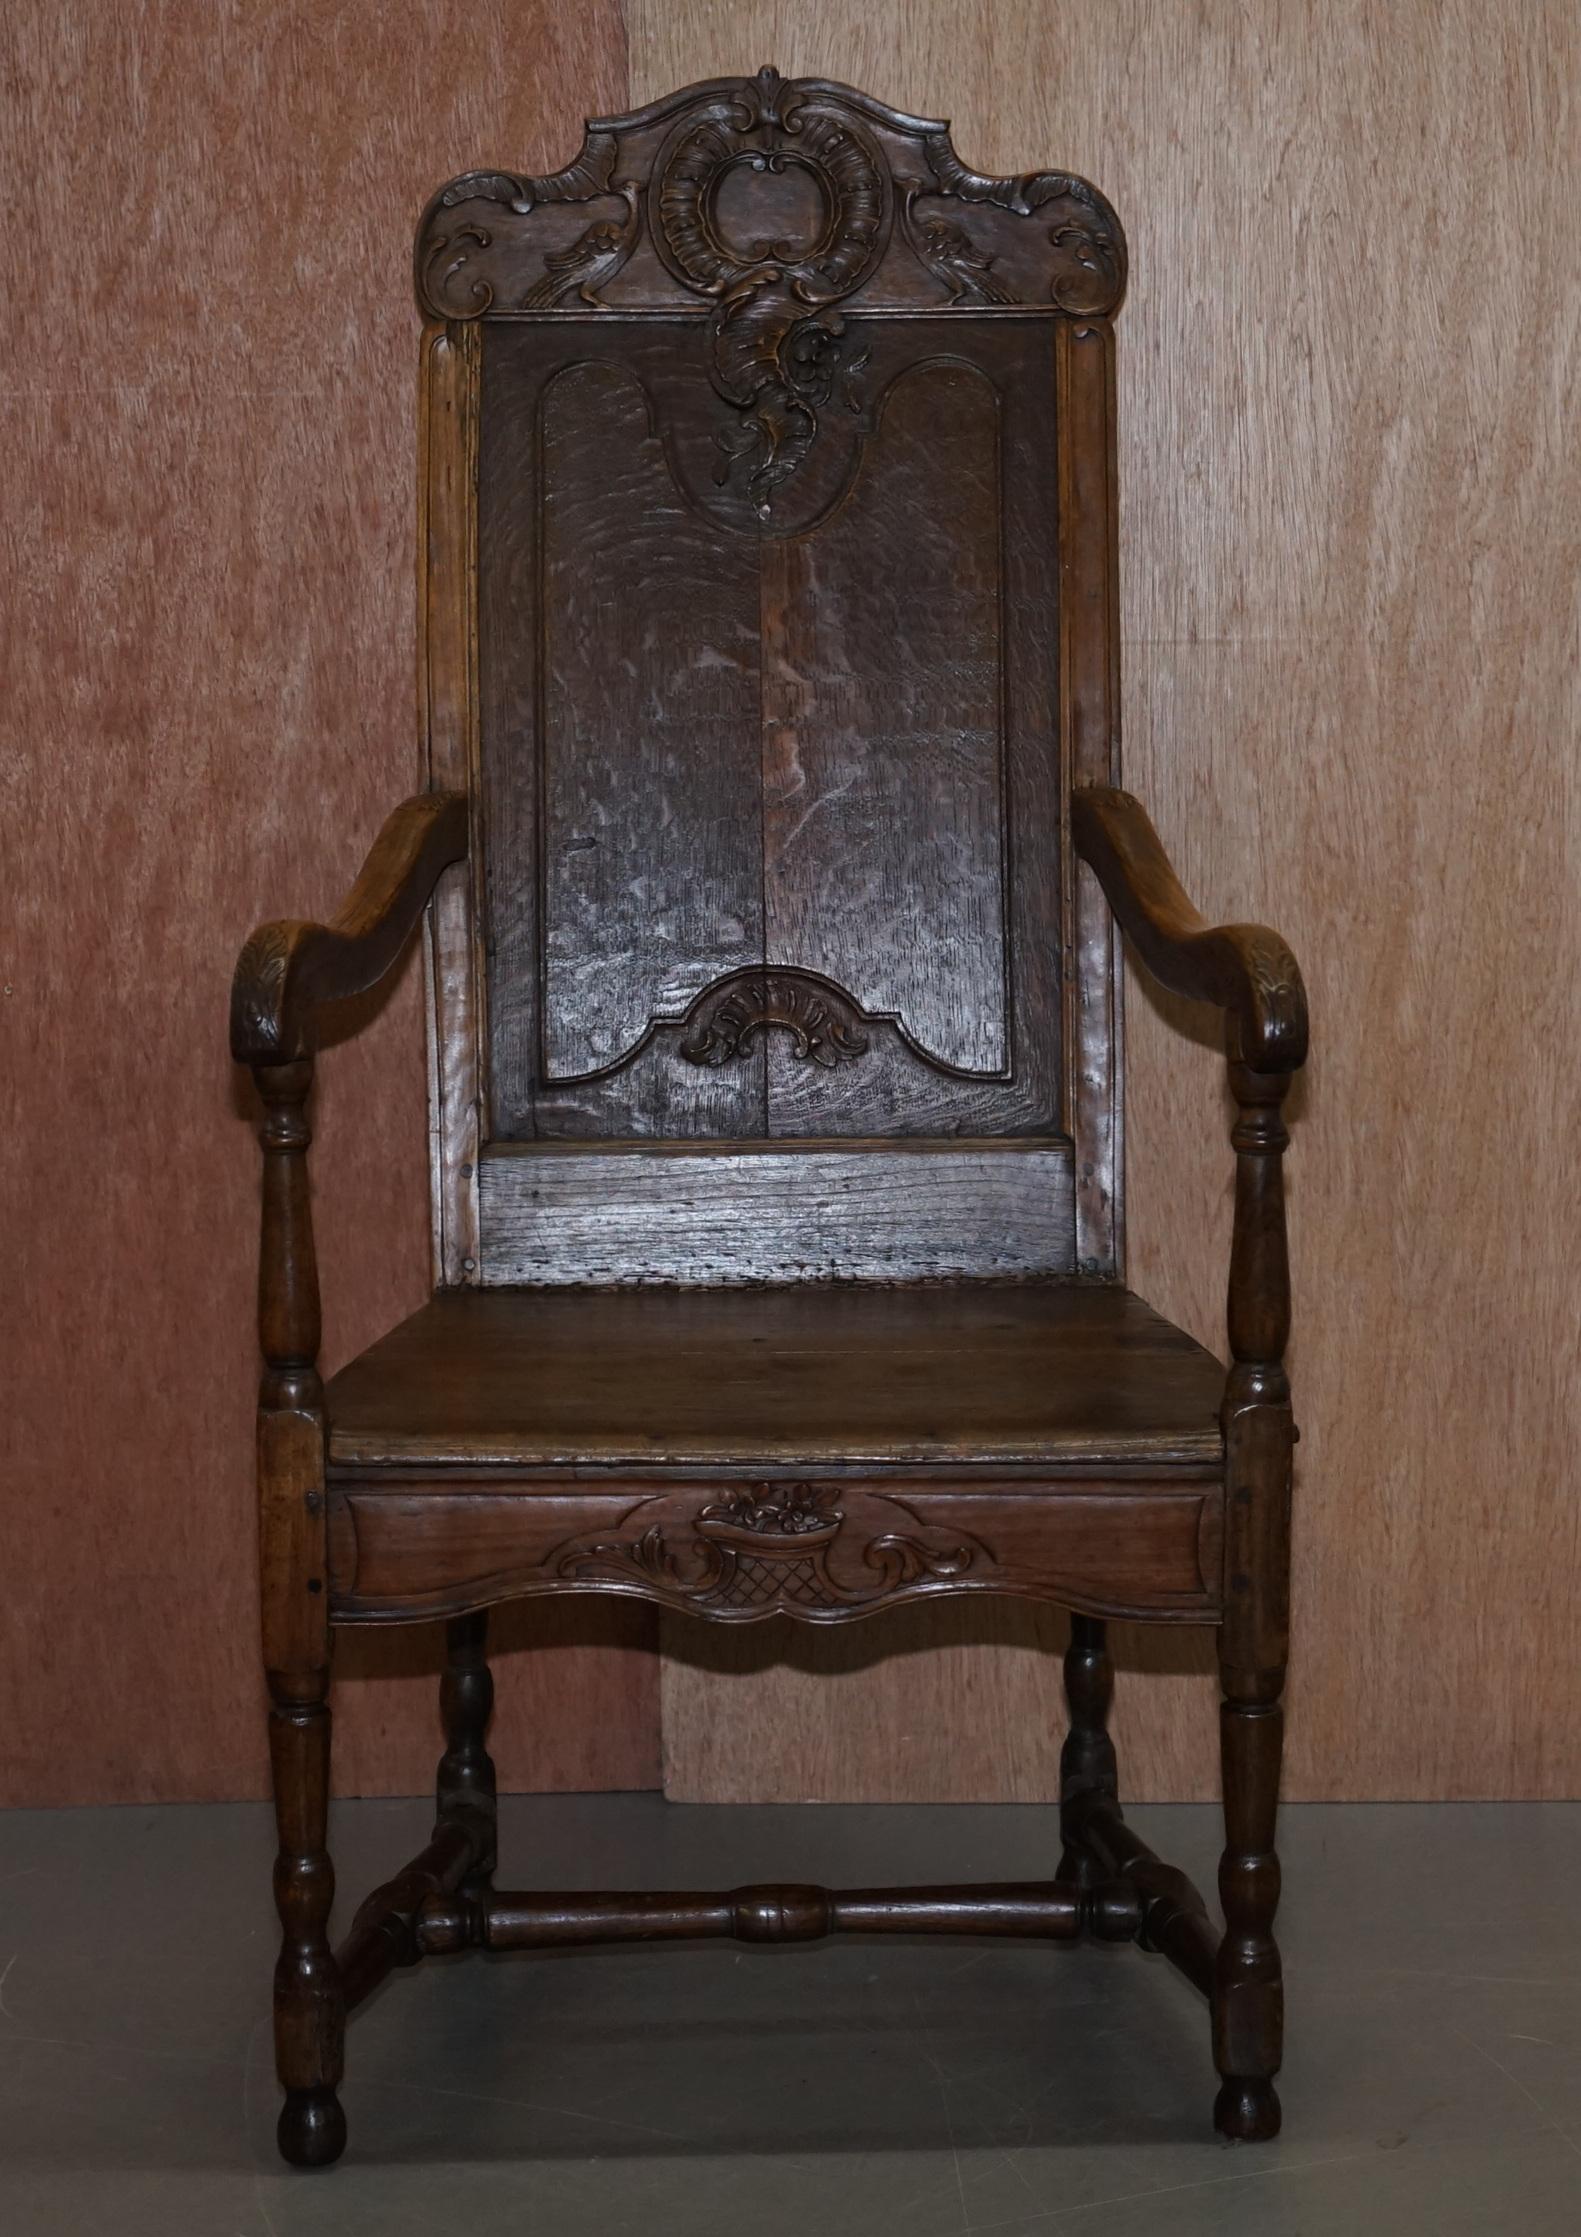 Wir freuen uns, diesen sehr seltenen, völlig originalen, handgeschnitzten Herve Liege Belgien Wainscot Eiche Armlehnstuhl um 1760 zum Verkauf anzubieten

Ein sehr gut gemachtes Originalstück, der Stuhl ist bekannt als ein Herve Liege Stuhl, sie